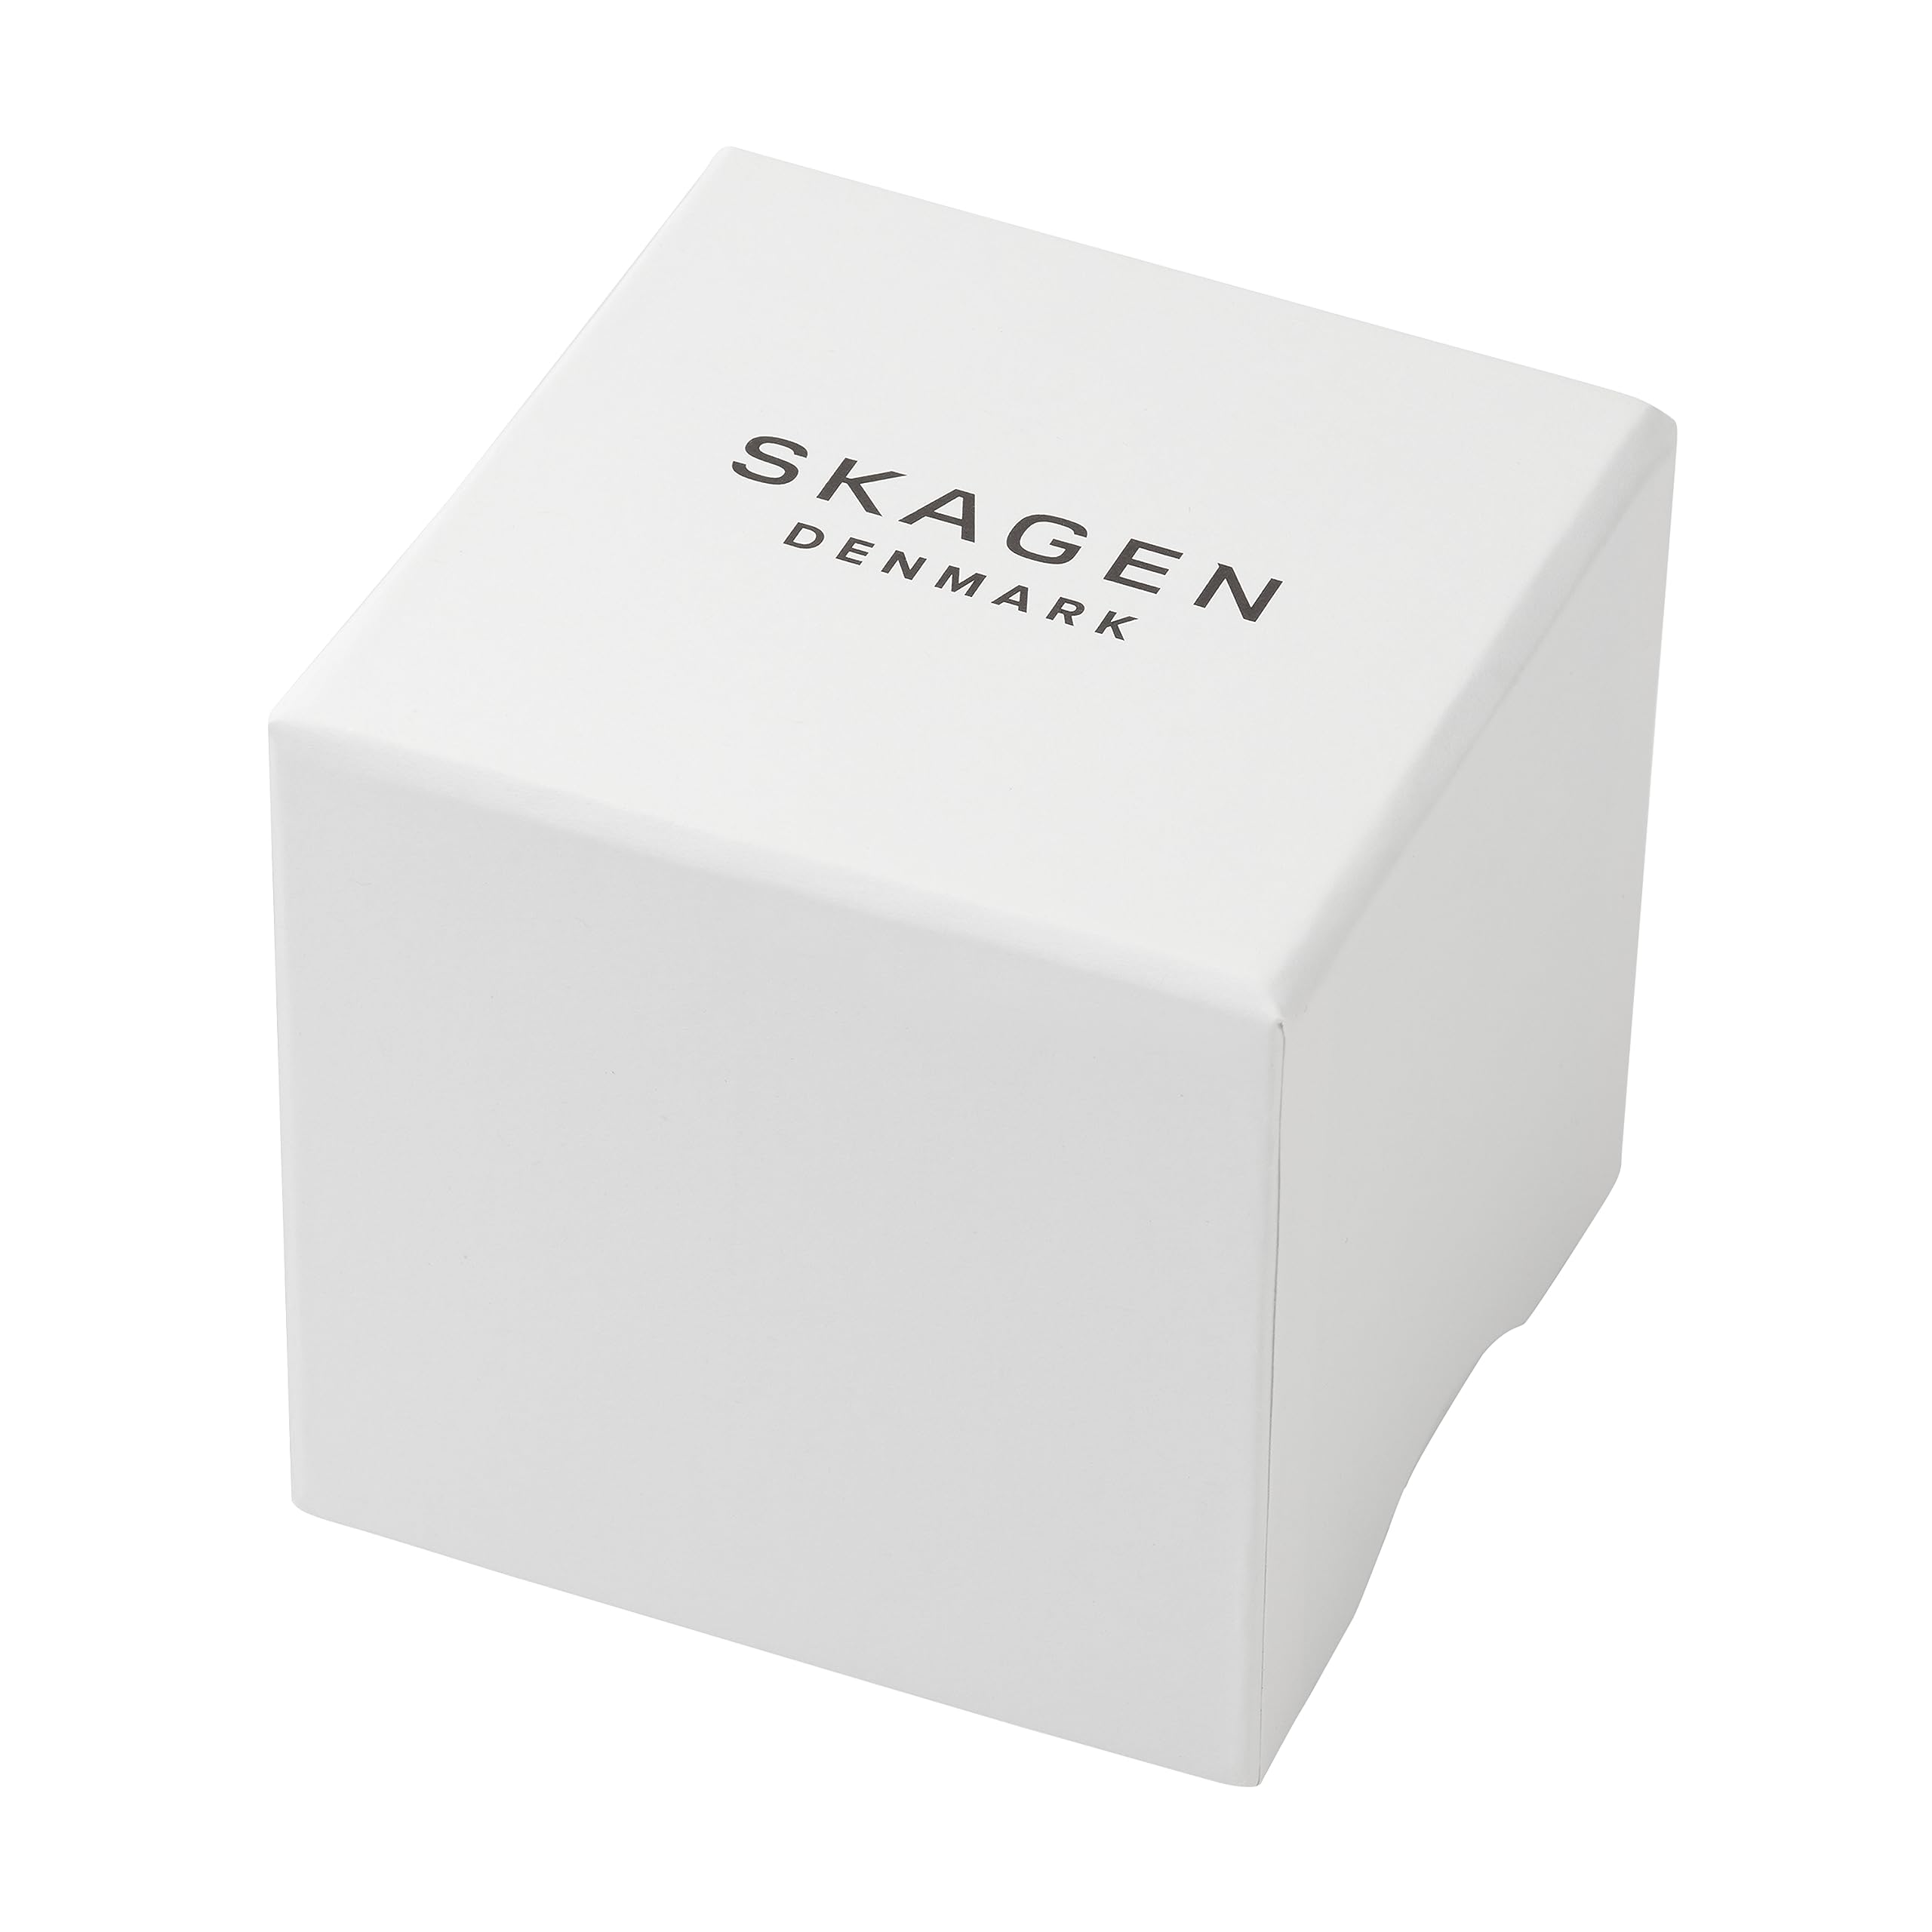 Skagen Women's Hagen Rectangular Case Three Hand Watch with Steel Mesh or Leather Band